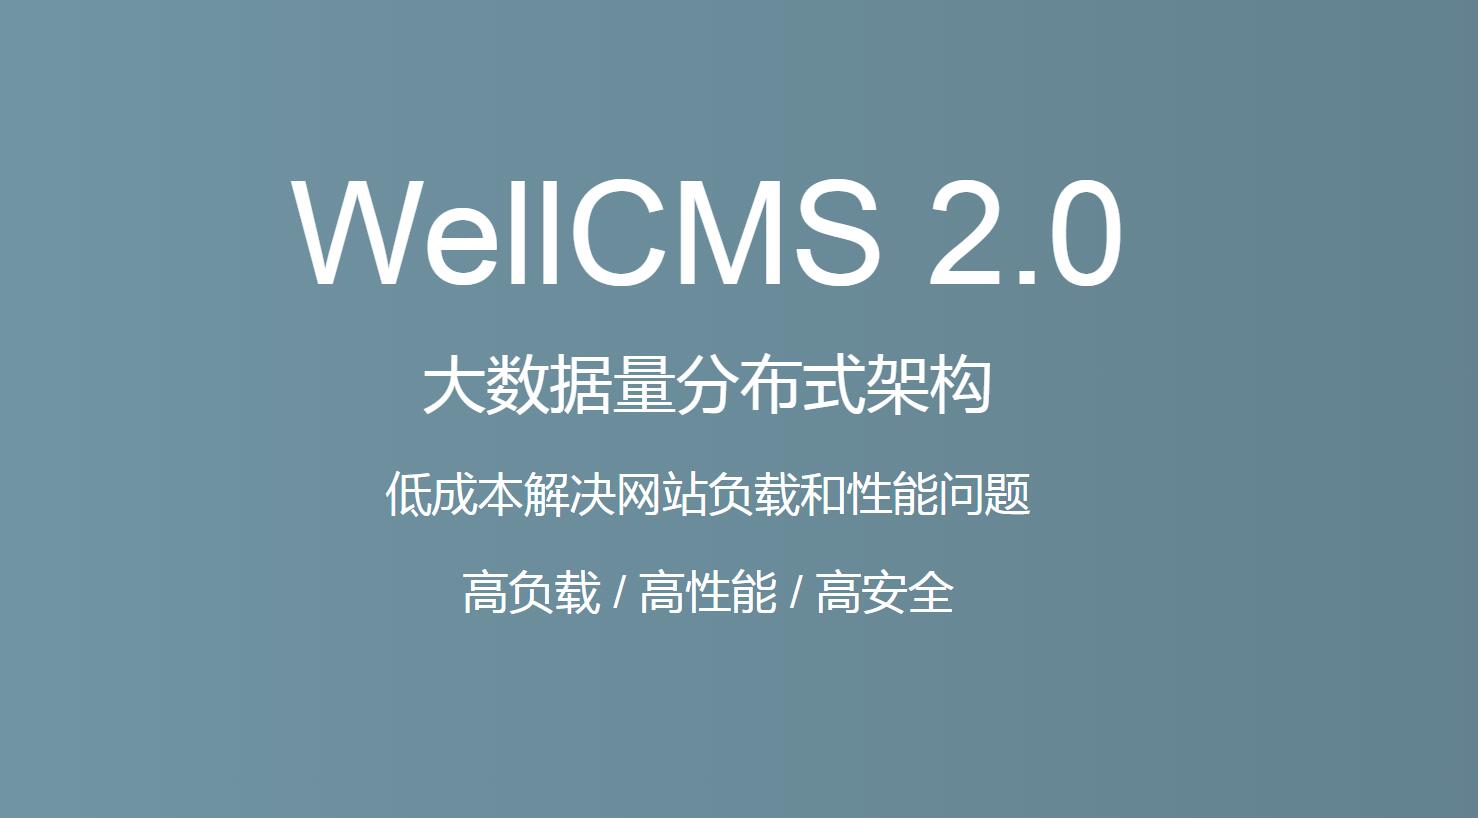 WellCMS X 2.0版 火车头发布模块